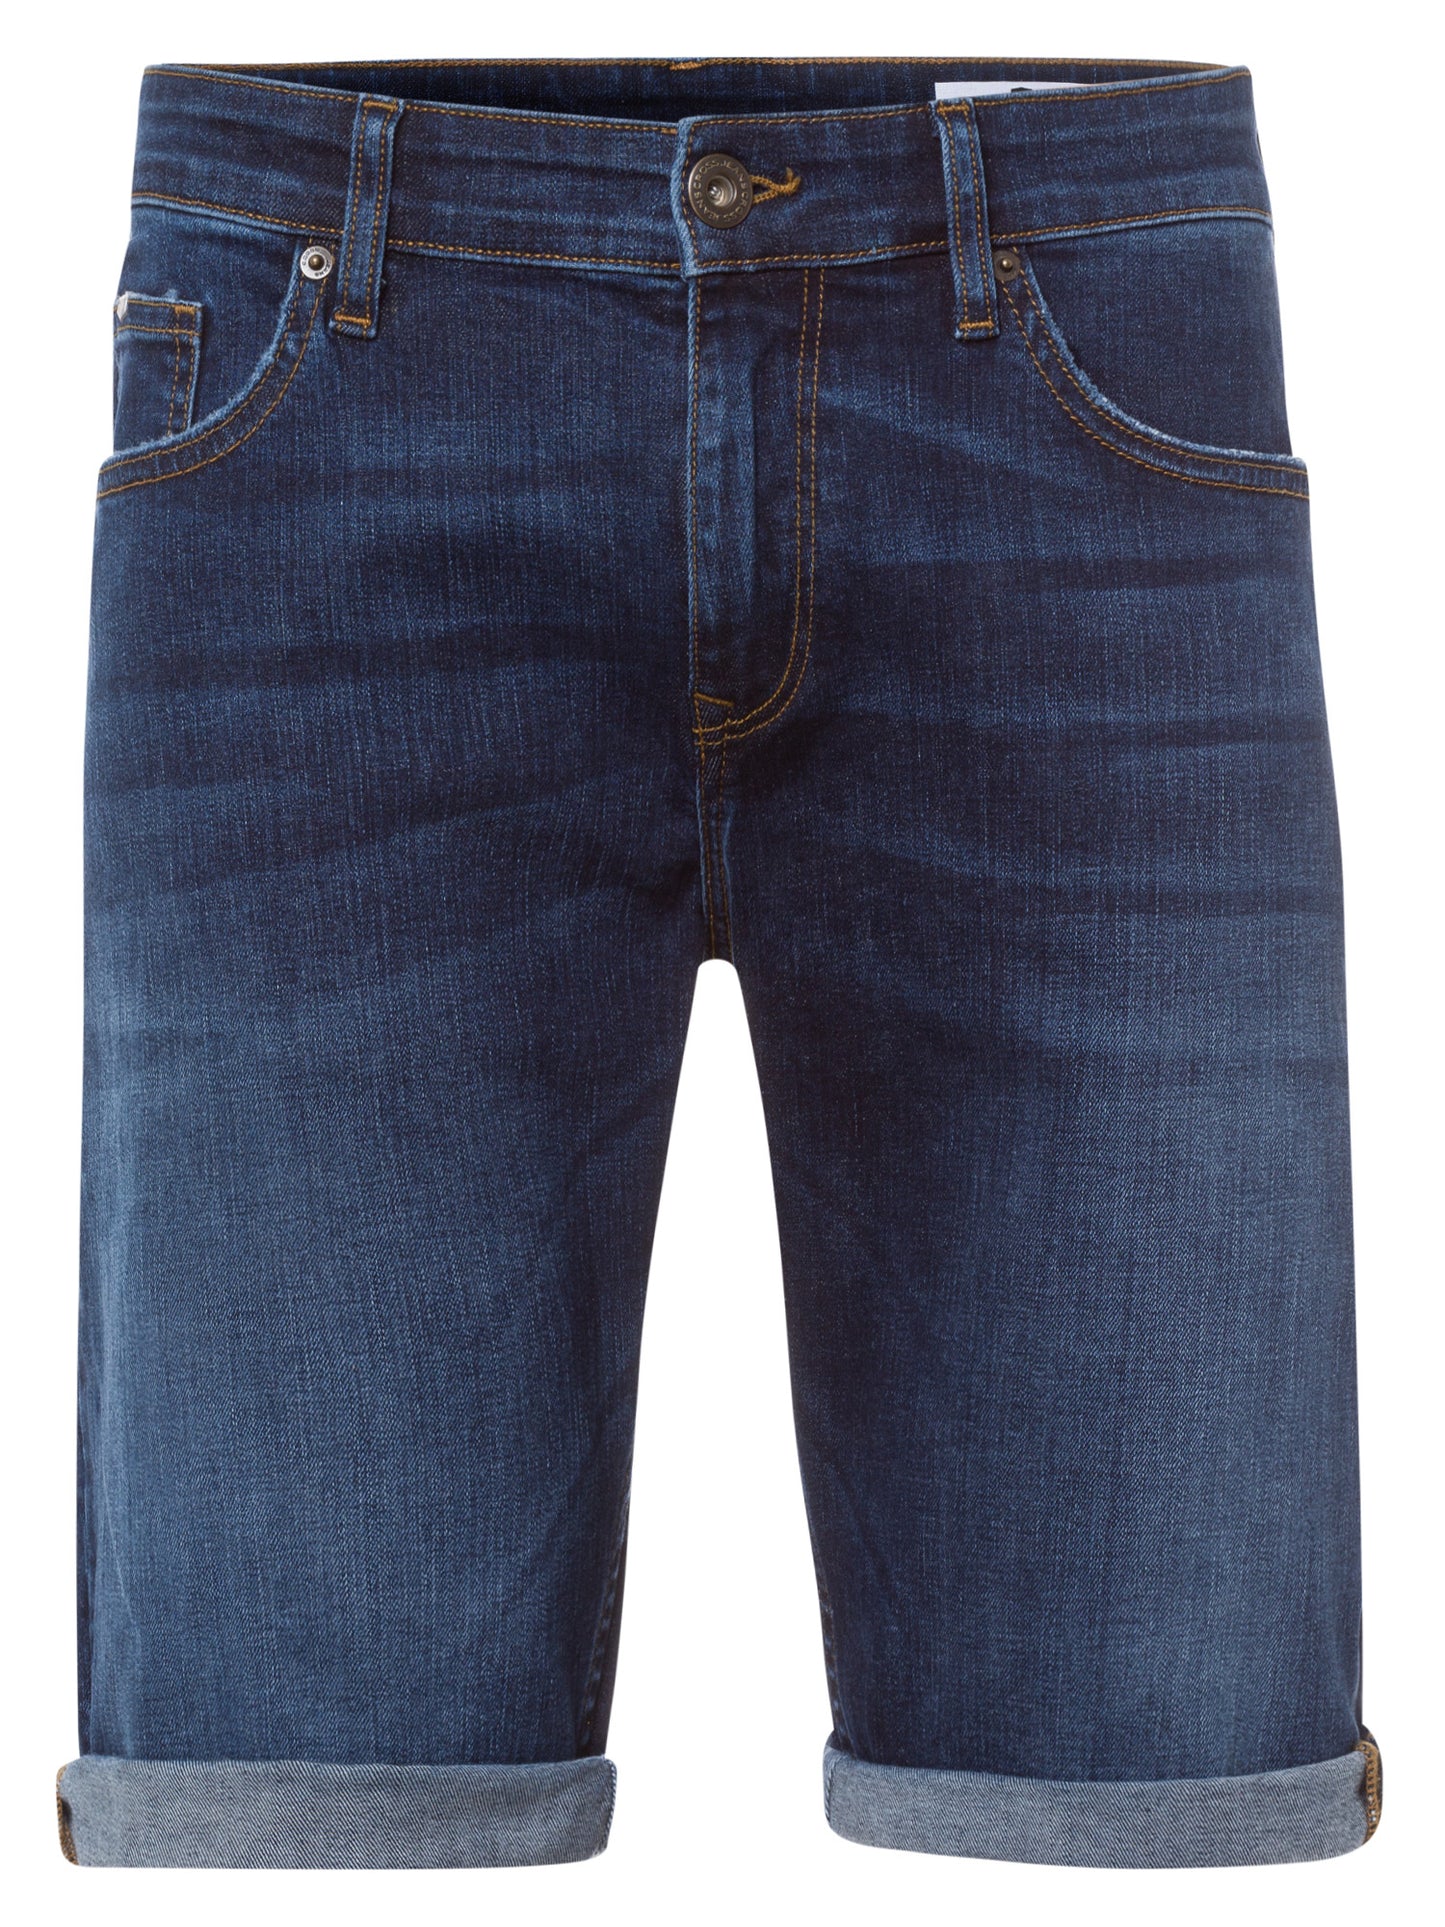 Leom Herren Jeans Regular Shorts dunkelblau